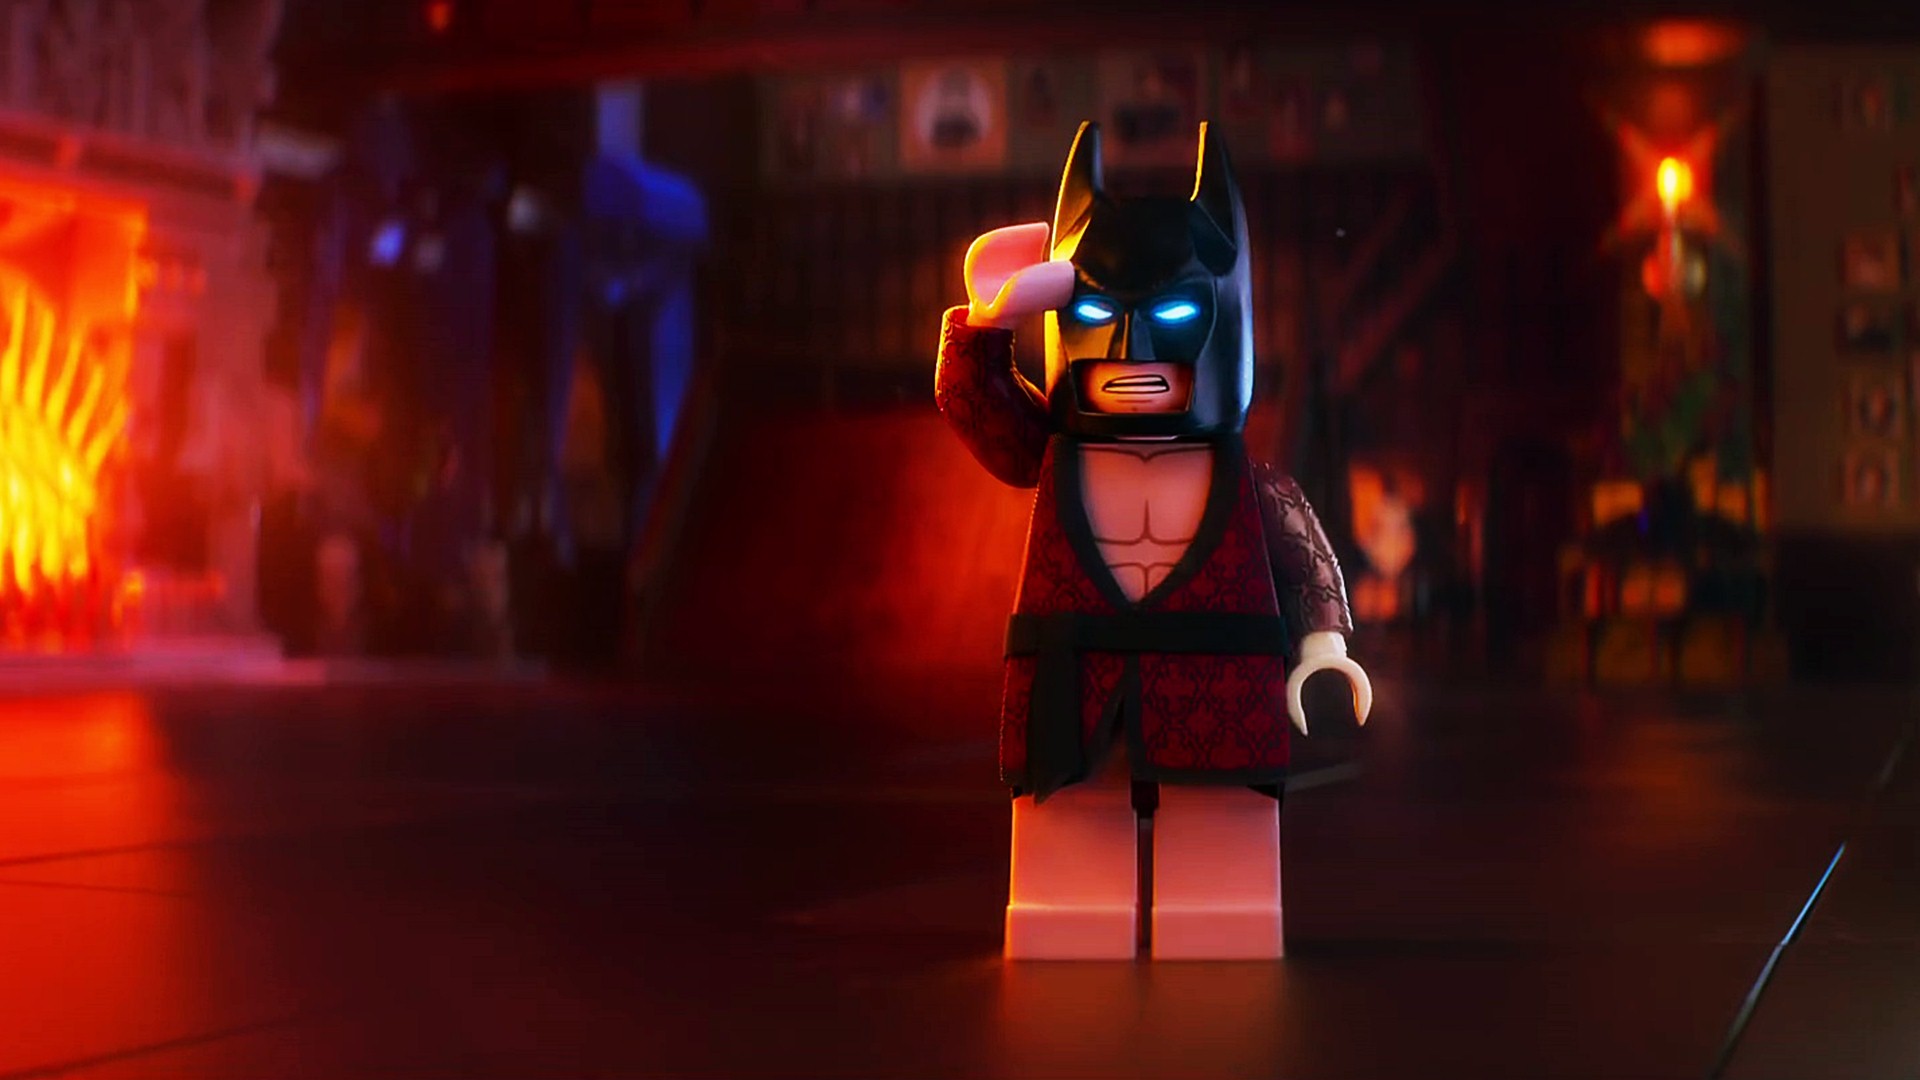 The Lego Batman Movie Batman Wallpaper - If You Wanna Make The World A Better Place Batman - HD Wallpaper 